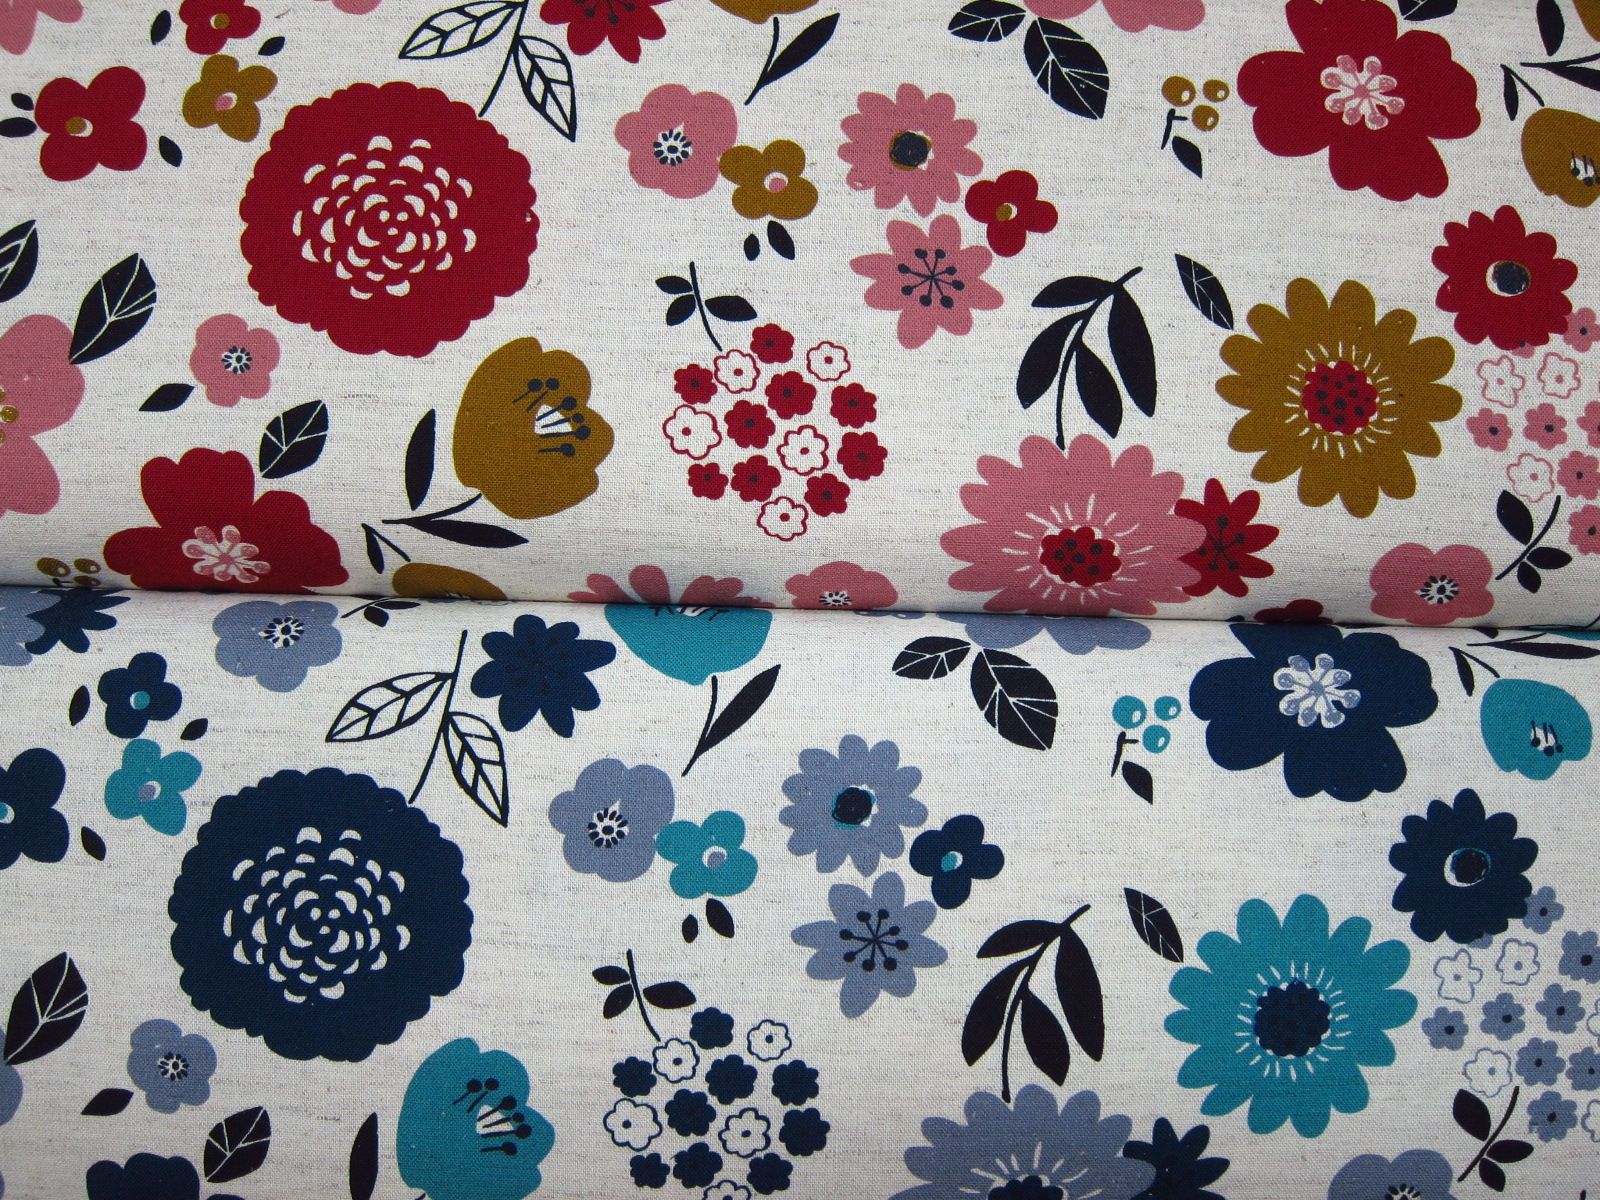 台灣製數位印刷綿麻混紡布-花舞-紅、藍-50%綿+50%特級亞麻、日本進口綿麻布底、台灣數位印刷